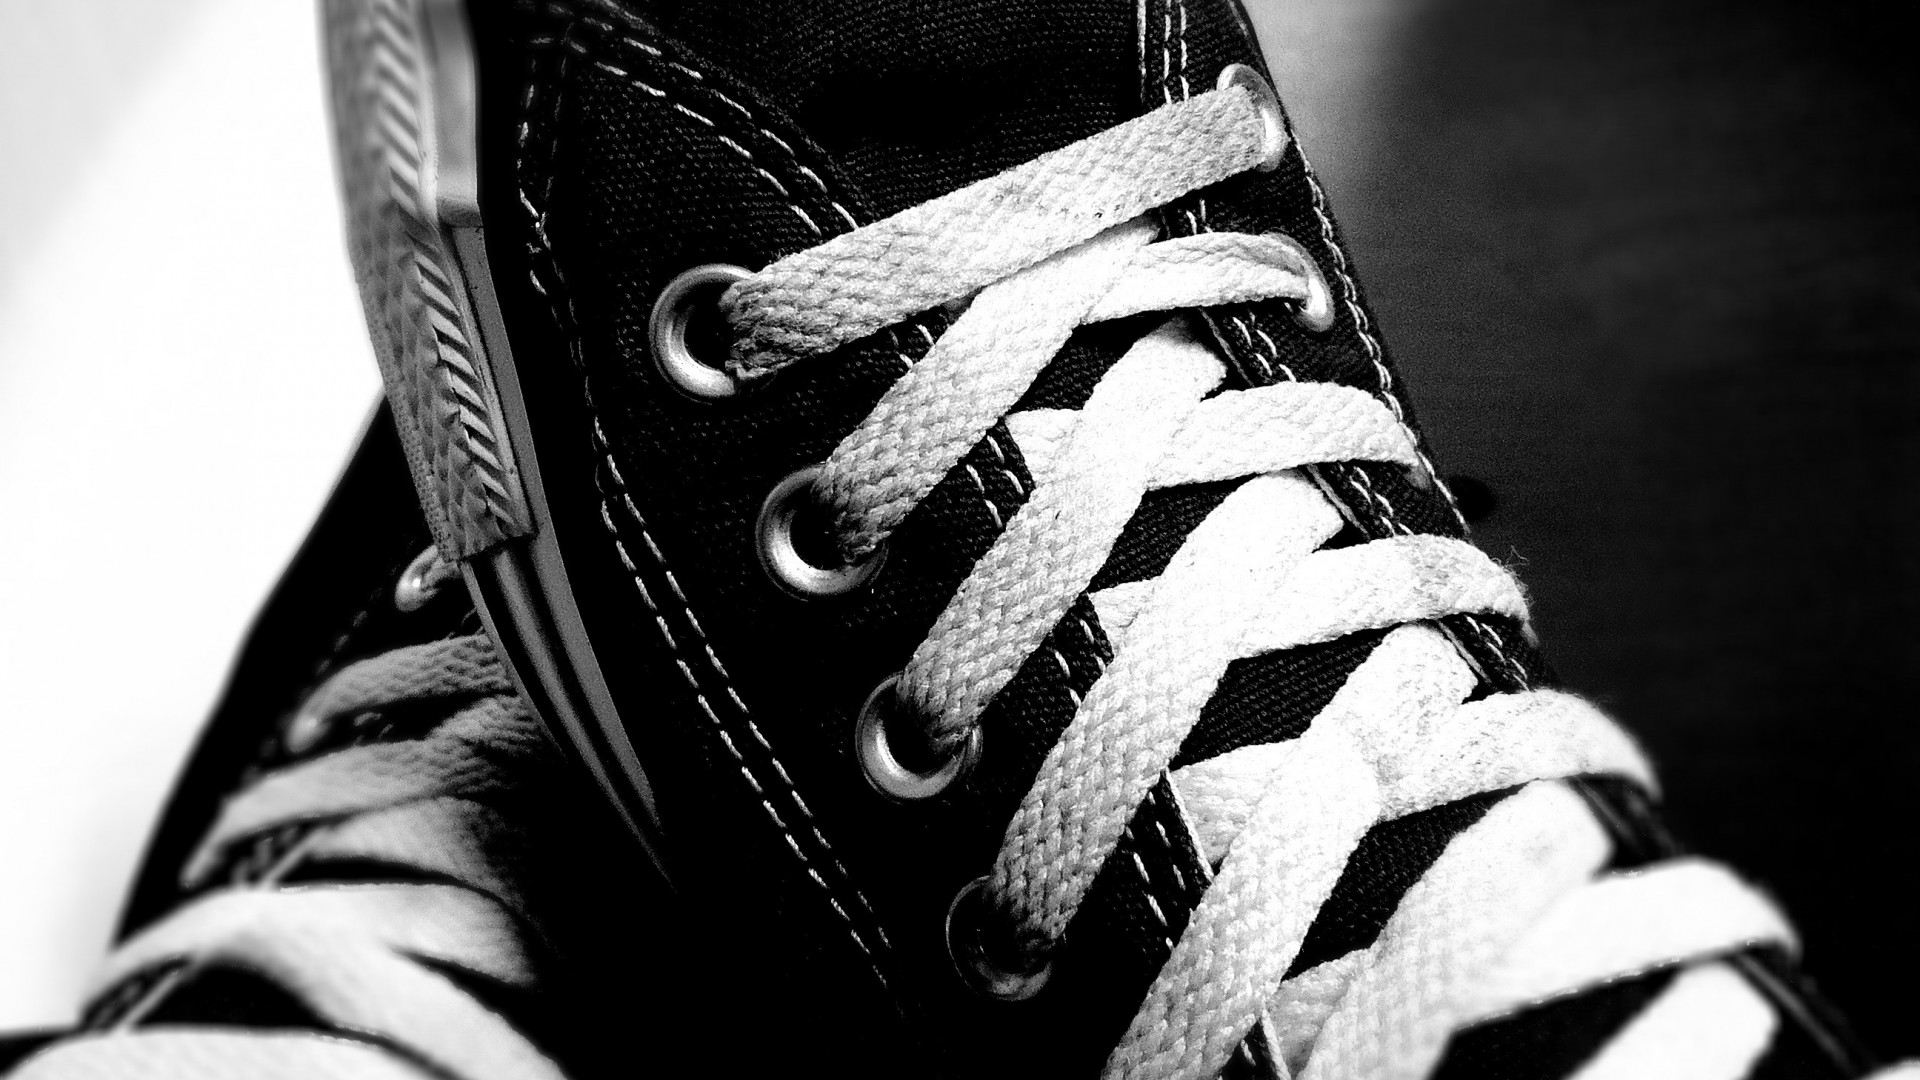 converse wallpaper,bianca,calzature,nero,scarpa,bianco e nero